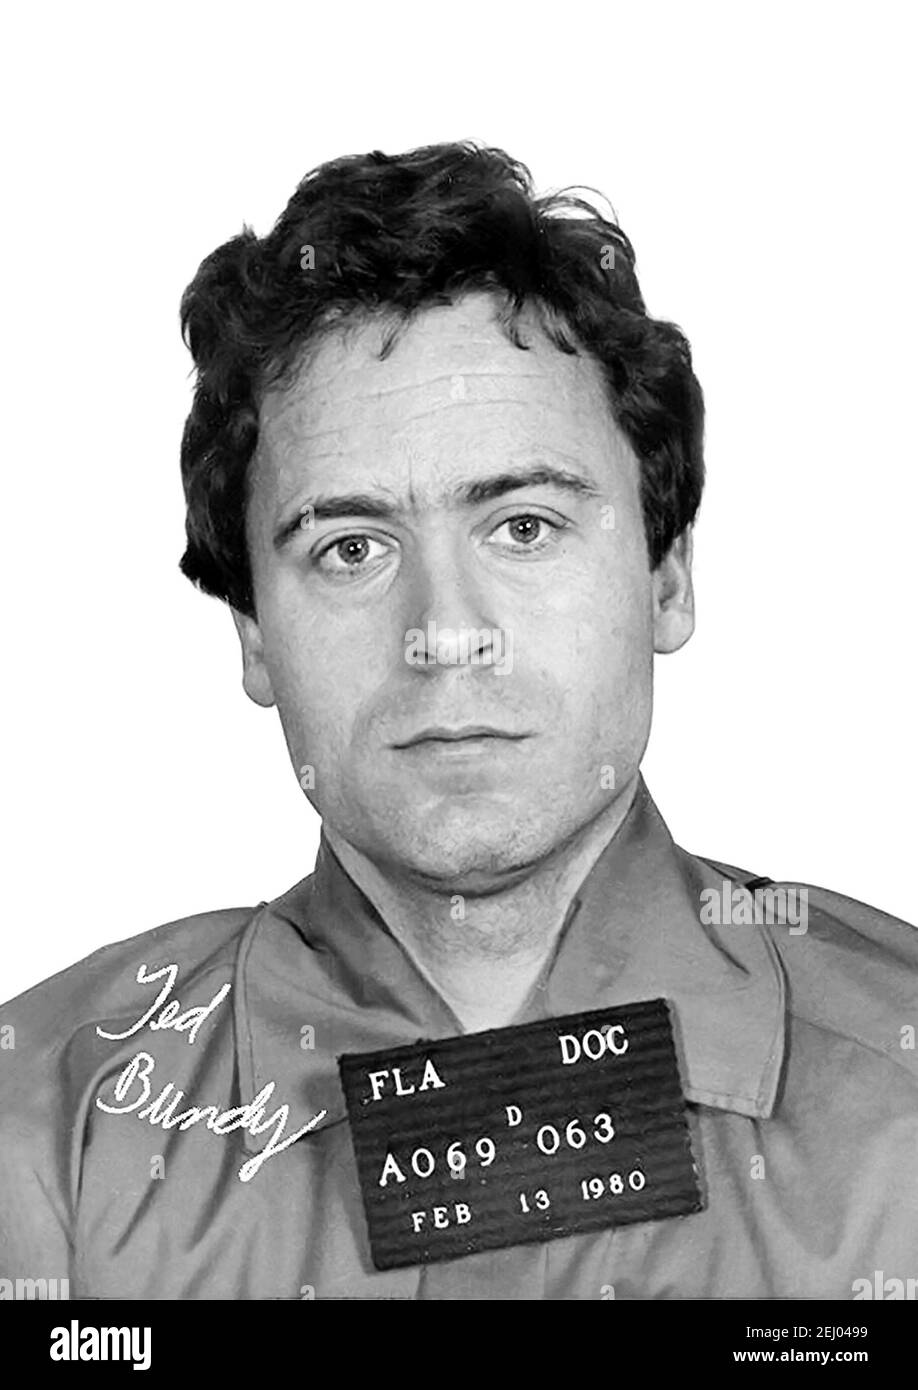 Ted Bundy. Retrato del asesino en serie estadounidense Theodore Robert Bundy (n. Cowell, 1946-1989), Departamento de correcciones de la Florida, fug shot, febrero de 1980 Foto de stock